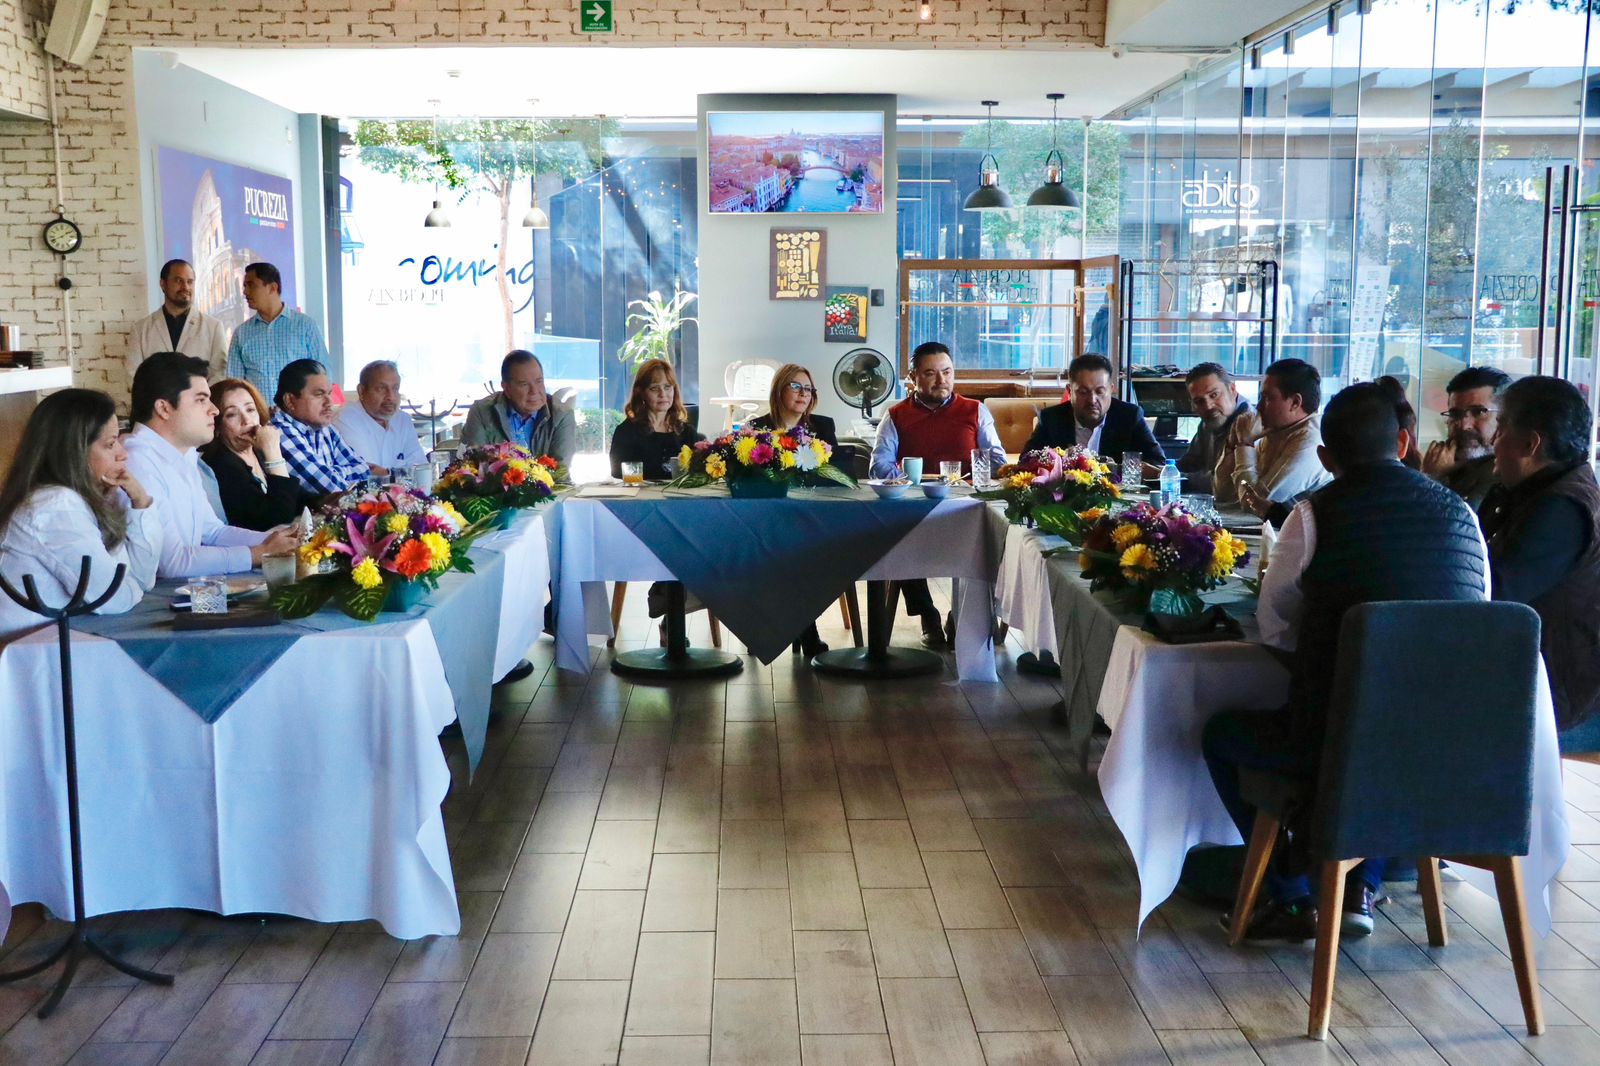 Un grupo de personas sentadas en un restaurante

Descripción generada automáticamente